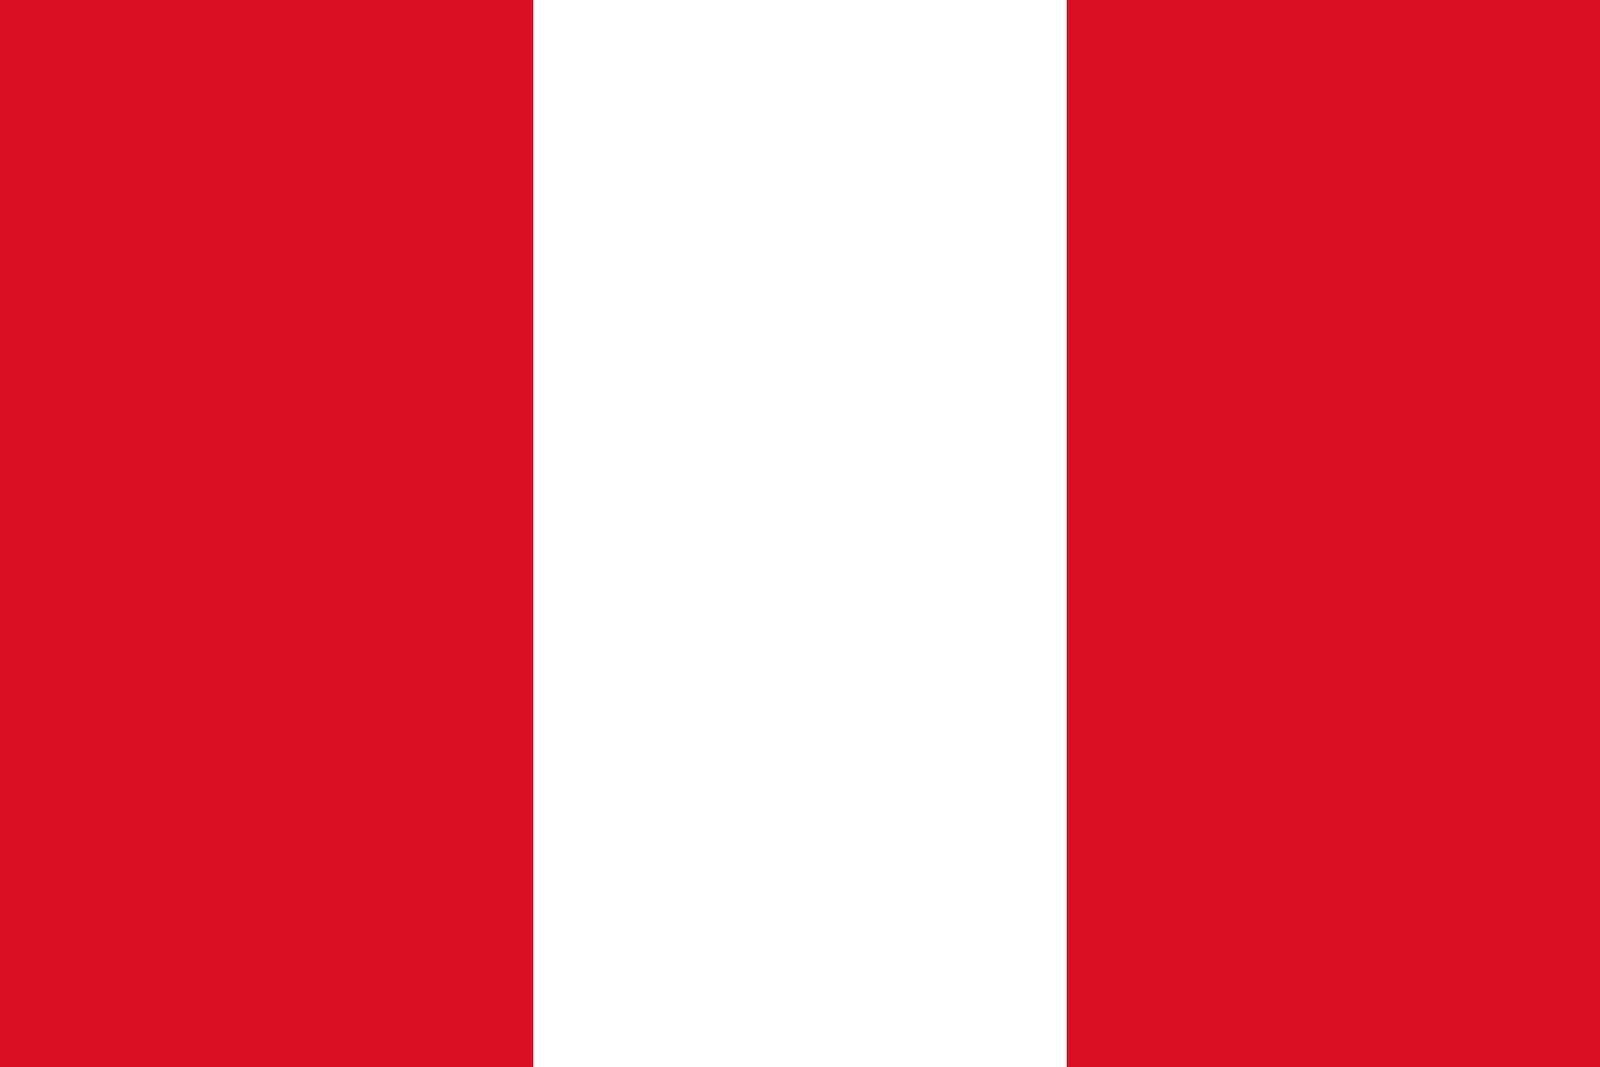 Прапор Перу онлайн пазл